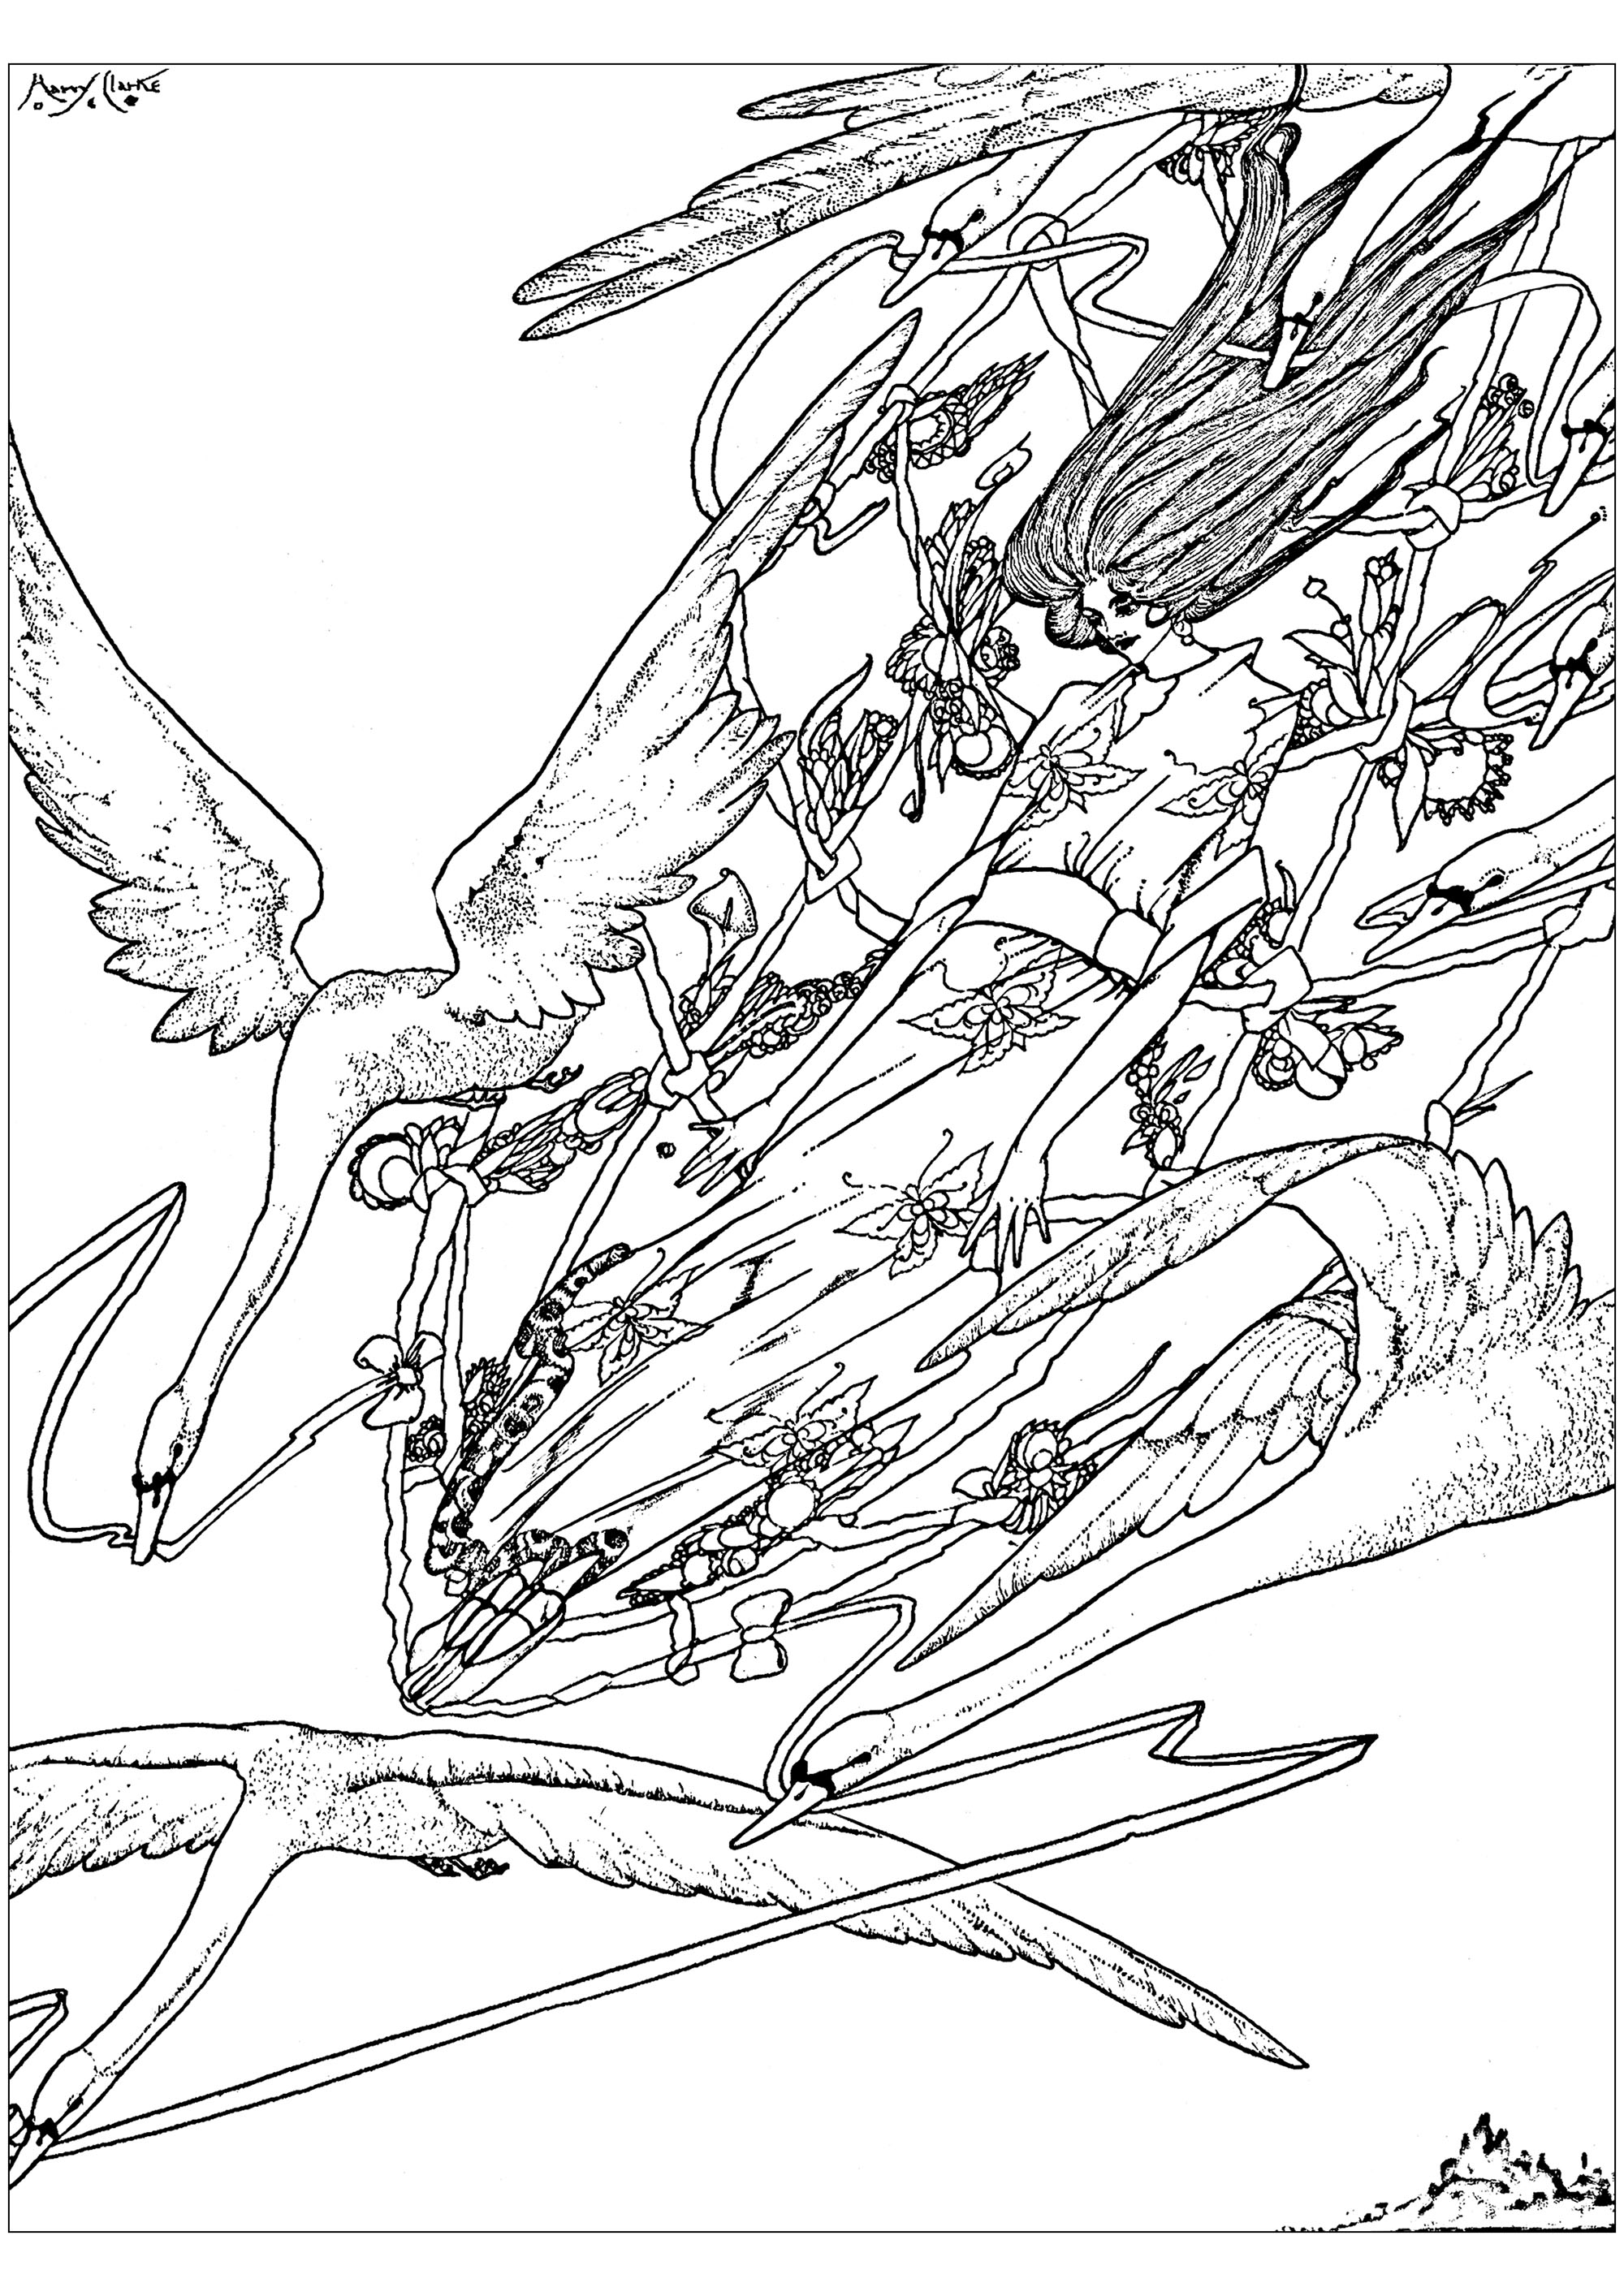 Colorazione creata a partire da un'illustrazione del 1916 di Harry Clarke, per illustrare 'Le oche selvatiche', una fiaba di Hans Christian Andersen. Quest'opera si ispira allo stile Arts and Crafts.